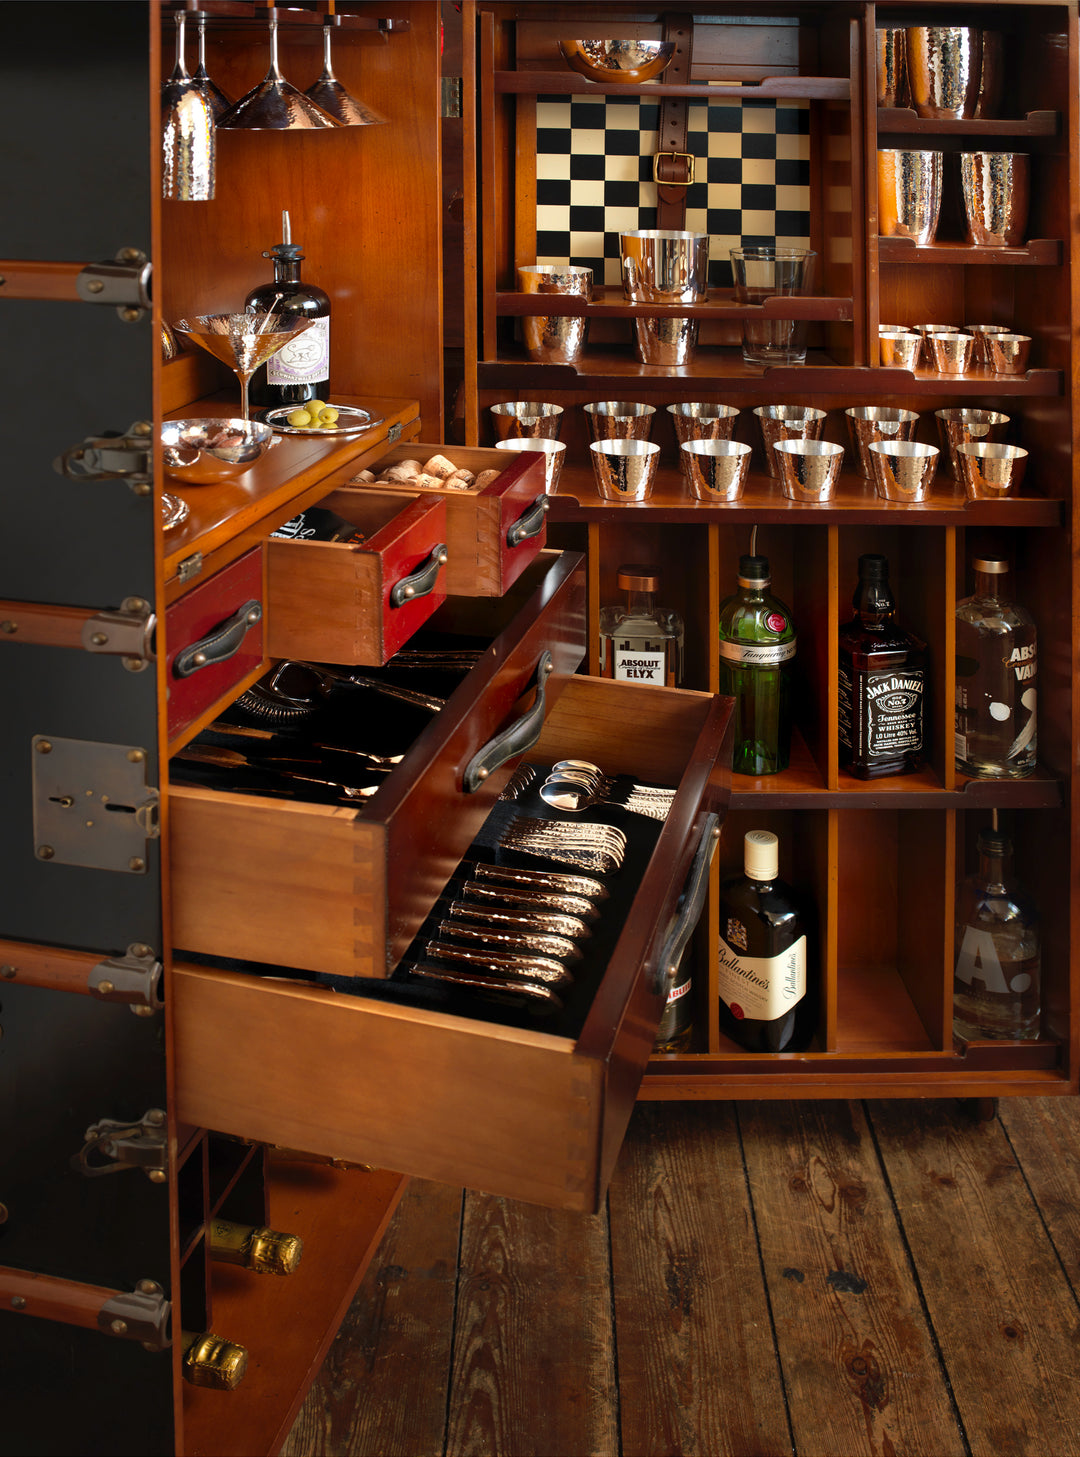 Gezeigt wird ein Holzschrank mit offenen Schubladen, die Besteck enthalten. Die Innenregale enthalten verschiedene Gläser und Alkoholflaschen, darunter Gin, Rum und Whisky. Bekannt als Robbe & Berking Barschrank im Kofferdesign schwarz – mit Ausstattung von Robbe & Berking, verfügt er über Fächer mit Bar-Zubehör wie Cocktail-Shakern und ein Schachbrettmuster an der Rückwand.